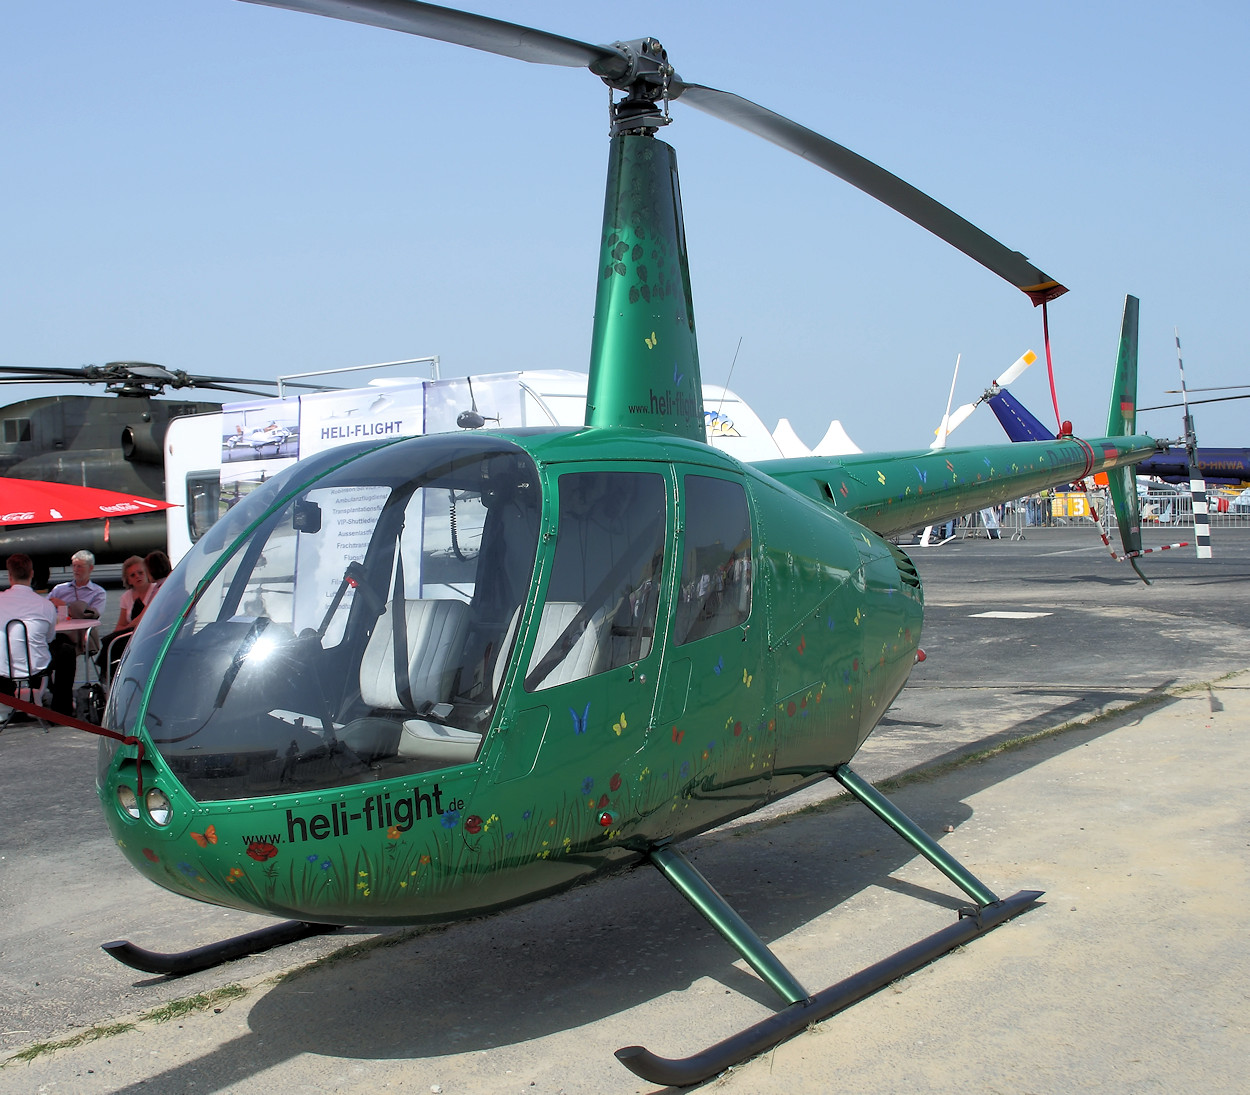 Robinson R44 Raven II - viersitziger, einmotoriger Hubschrauber mit Kolbenmotor